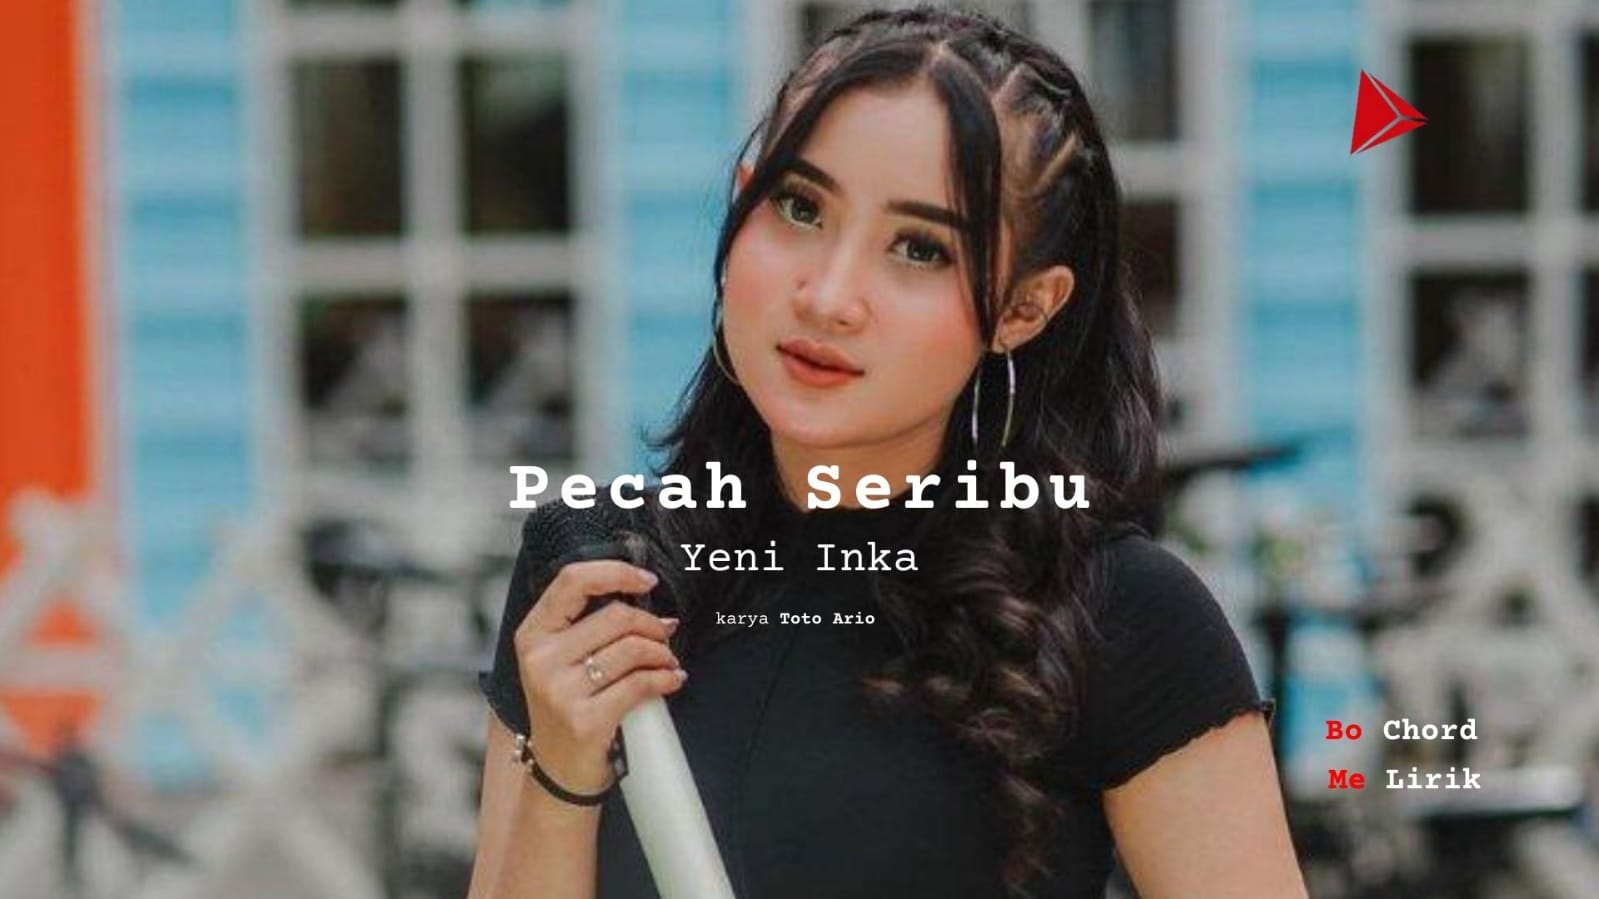 Bo Chord Pecah Seribu | Yeni Inka (C)